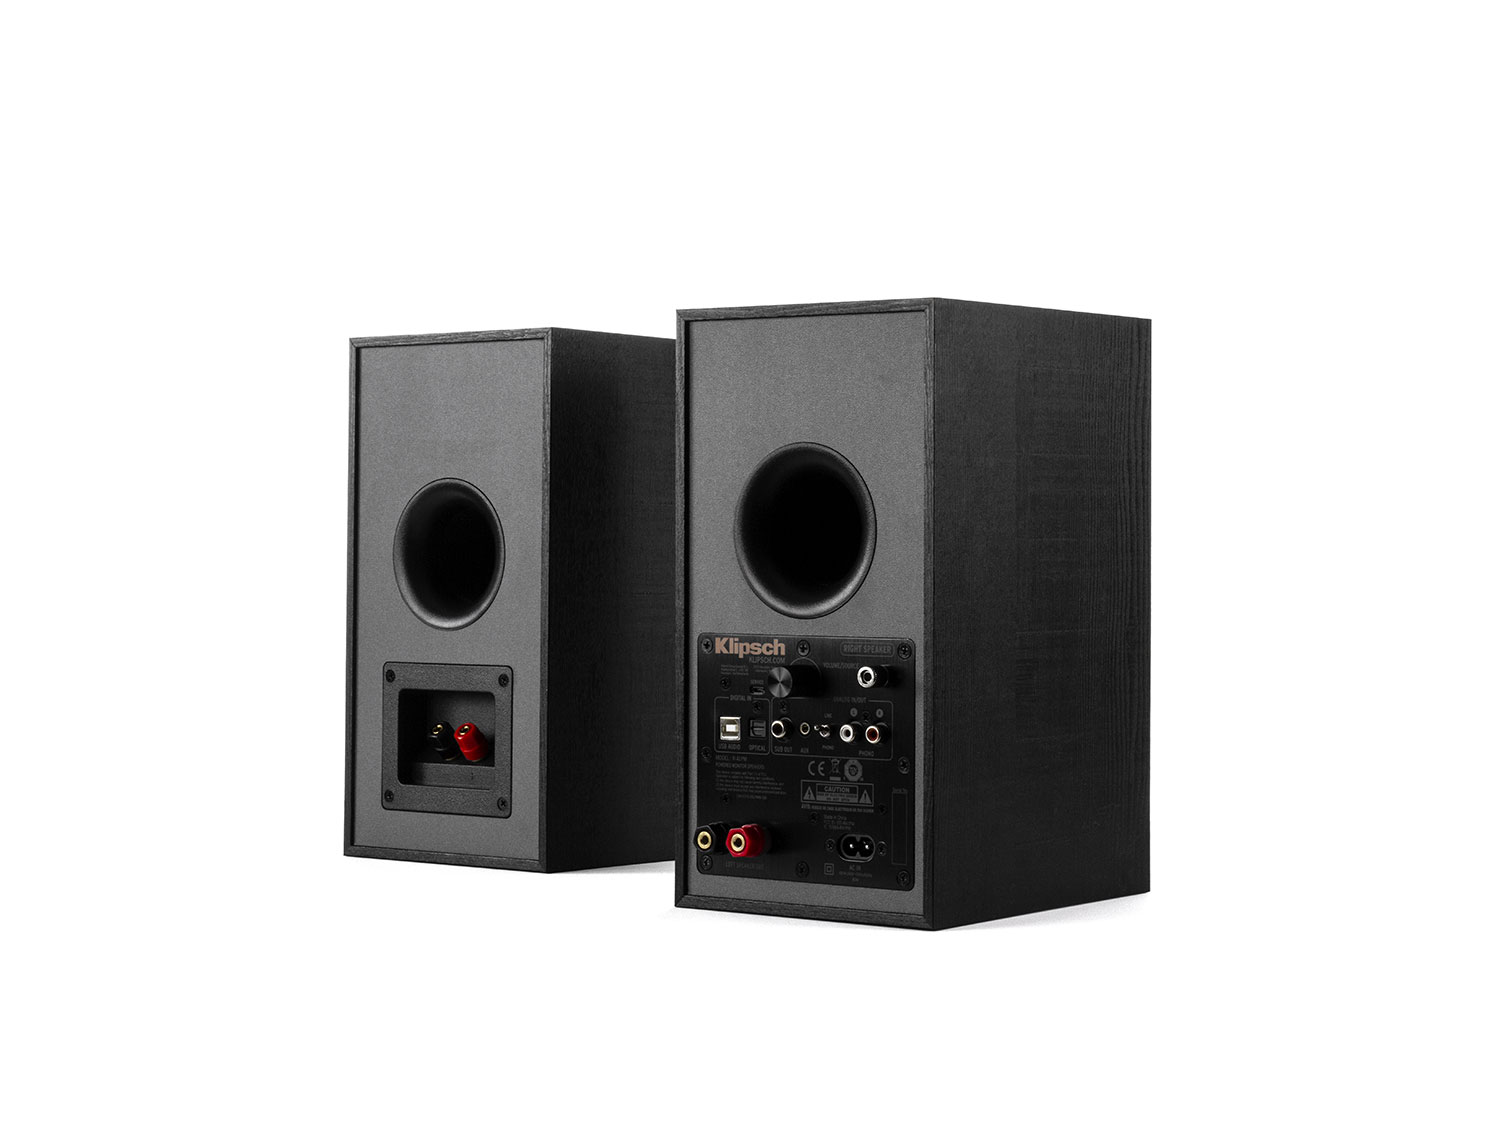 R-41PM (Black)
(Power Speaker)